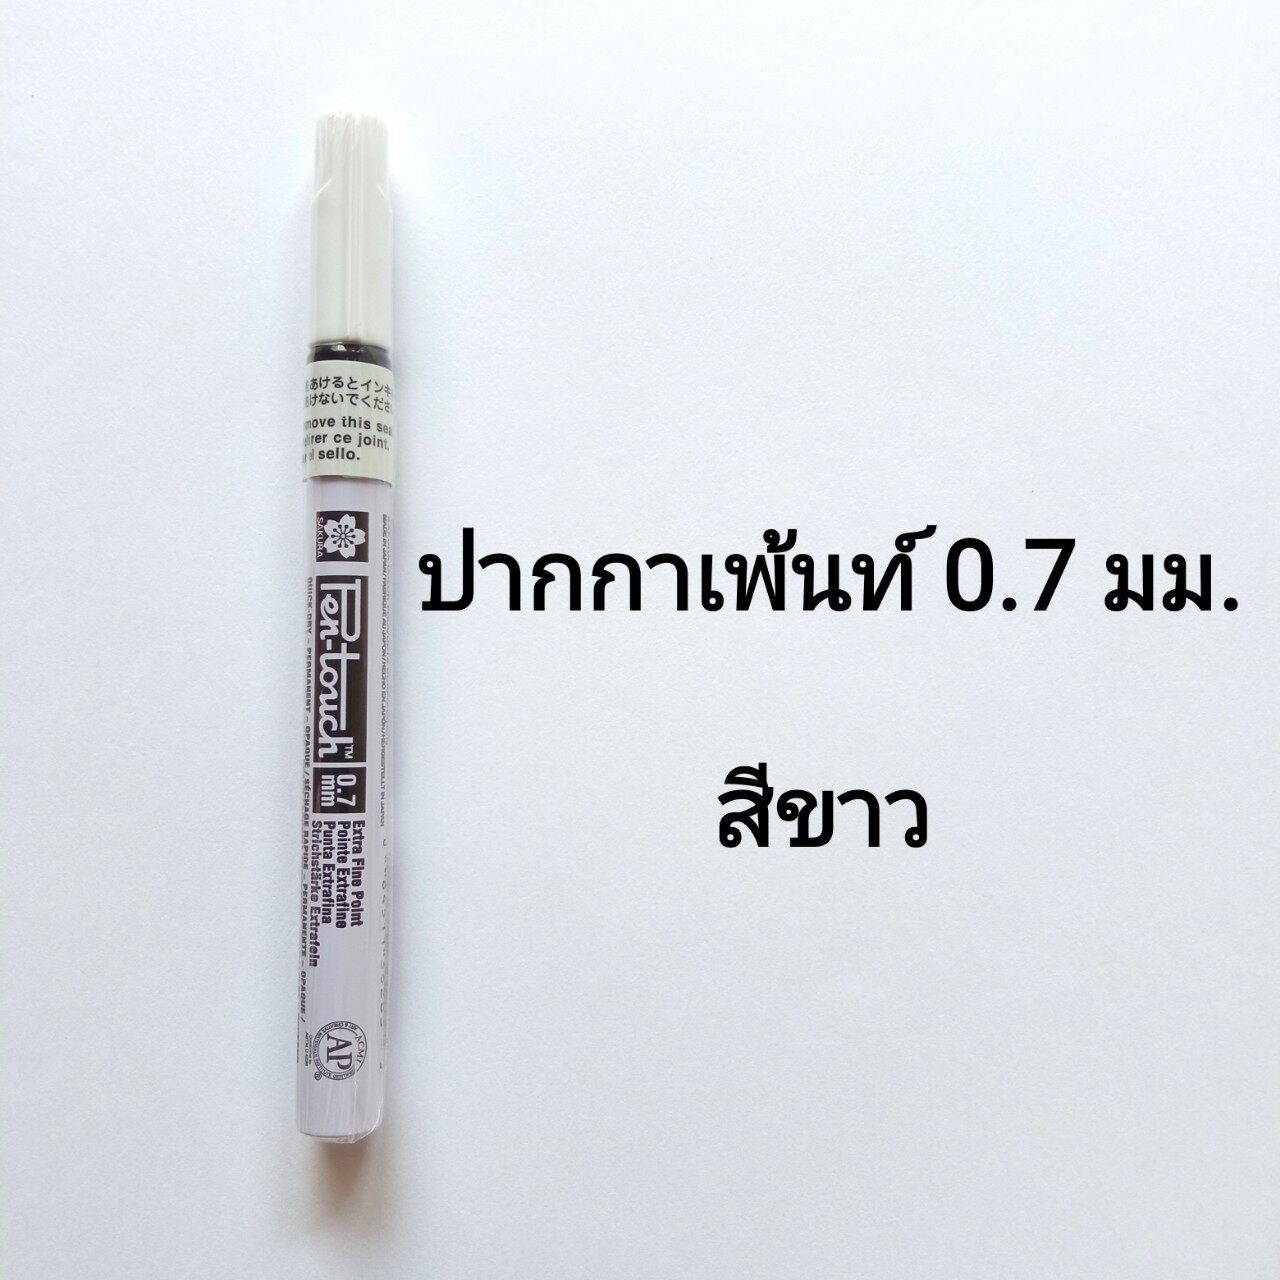 ปากกาเพ้นท์ Sakura Pentouch Extra Fine 0.7มม.